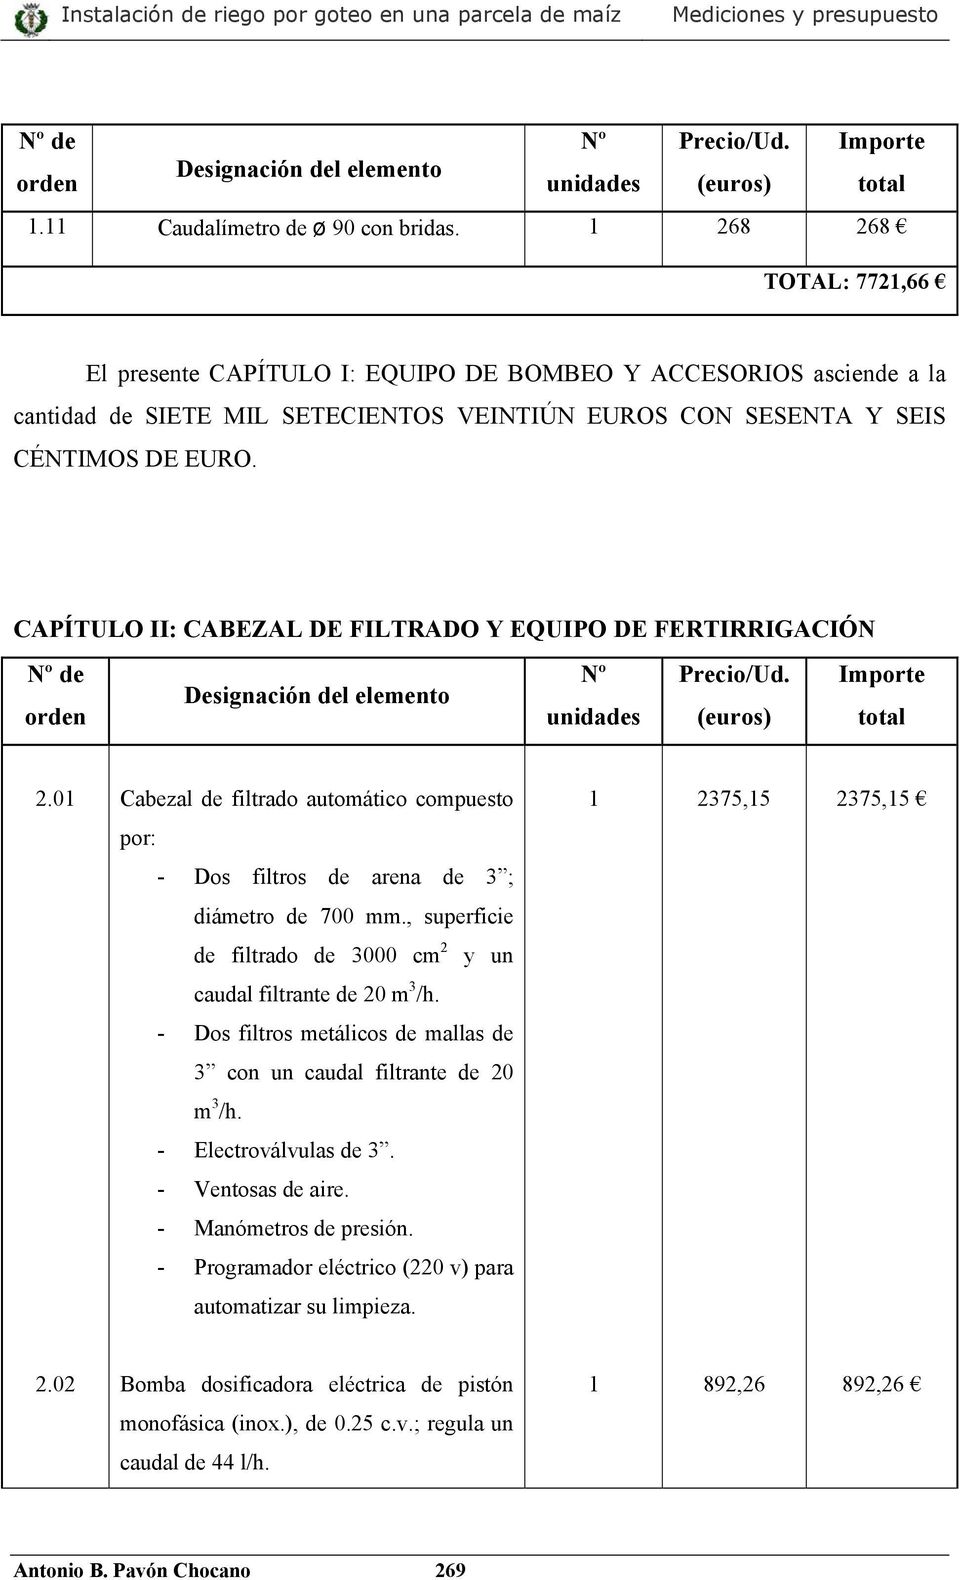 CAPÍTULO II: CABEZAL DE FILTRADO Y EQUIPO DE FERTIRRIGACIÓN Nº Precio/ Importe unidades (euros) total 2.